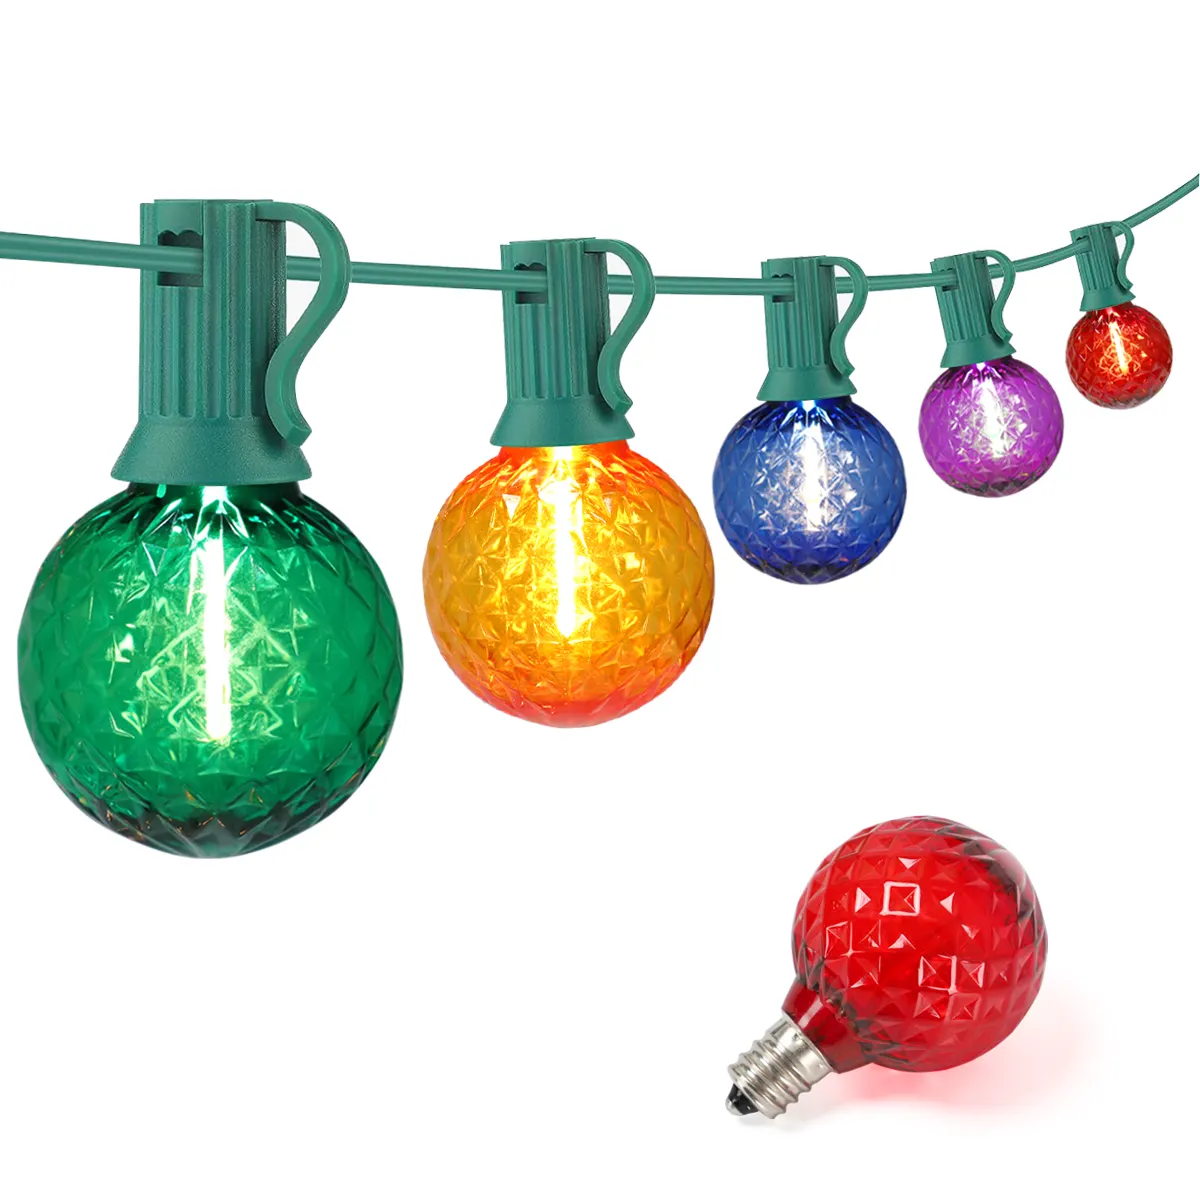 Árbol de Navidad decoraciones iluminadas de Navidad lámparas decorativas impermeables al aire libre para la decoración de la casa